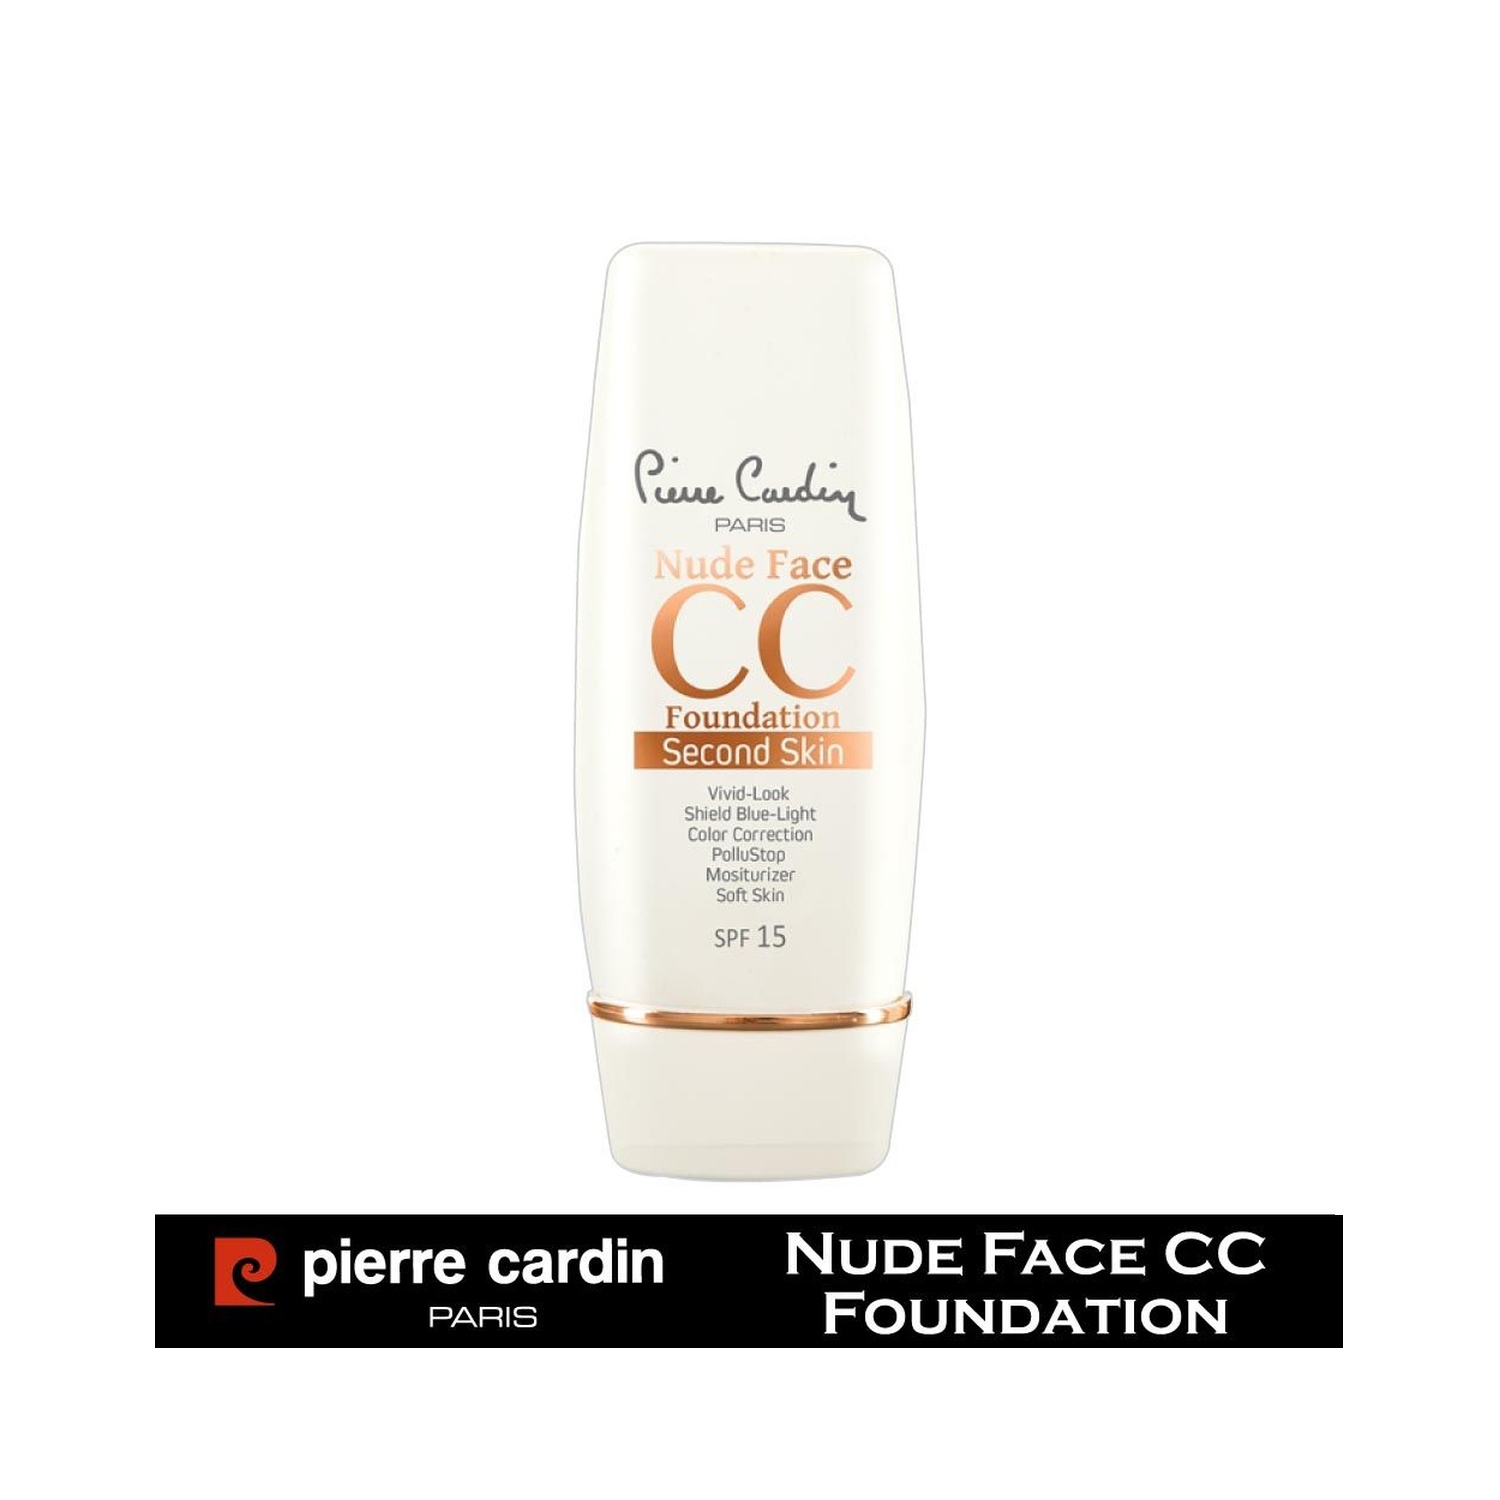 Pierre Cardin Paris | Pierre Cardin Paris Second Skin Nude Face CC Foundation - 670 Medium (30ml)